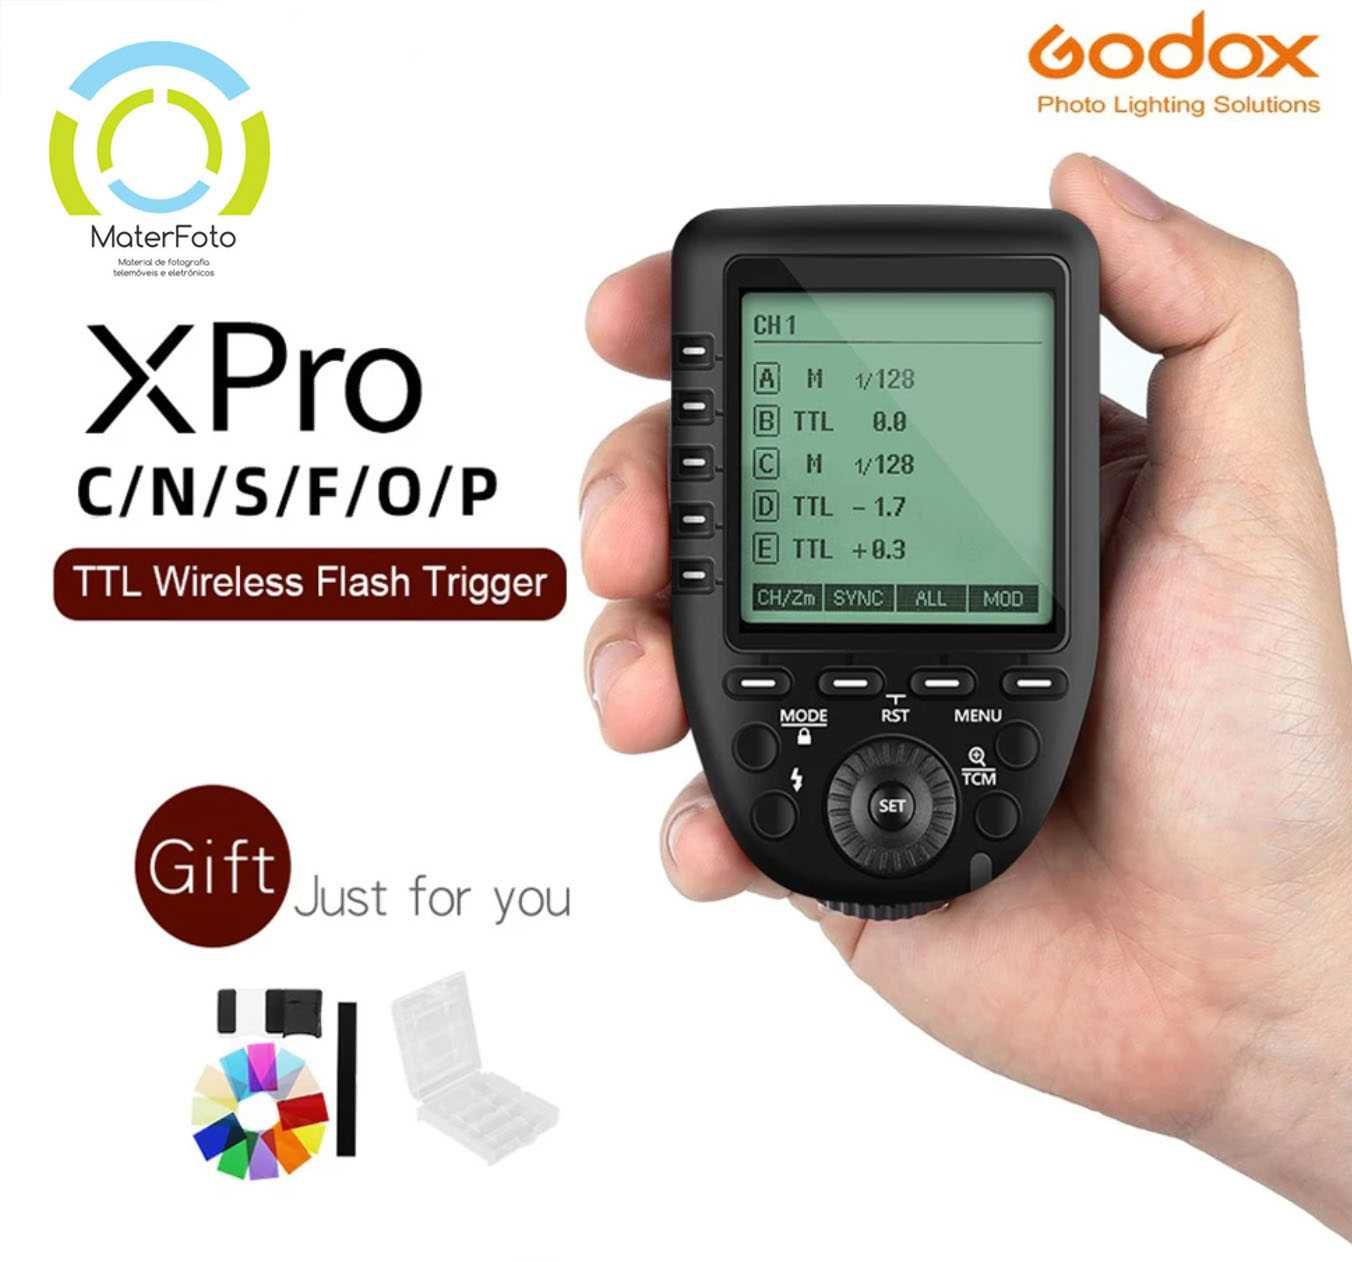 (NOVO) Godox Disparador de Flash XPro-N para Nikon